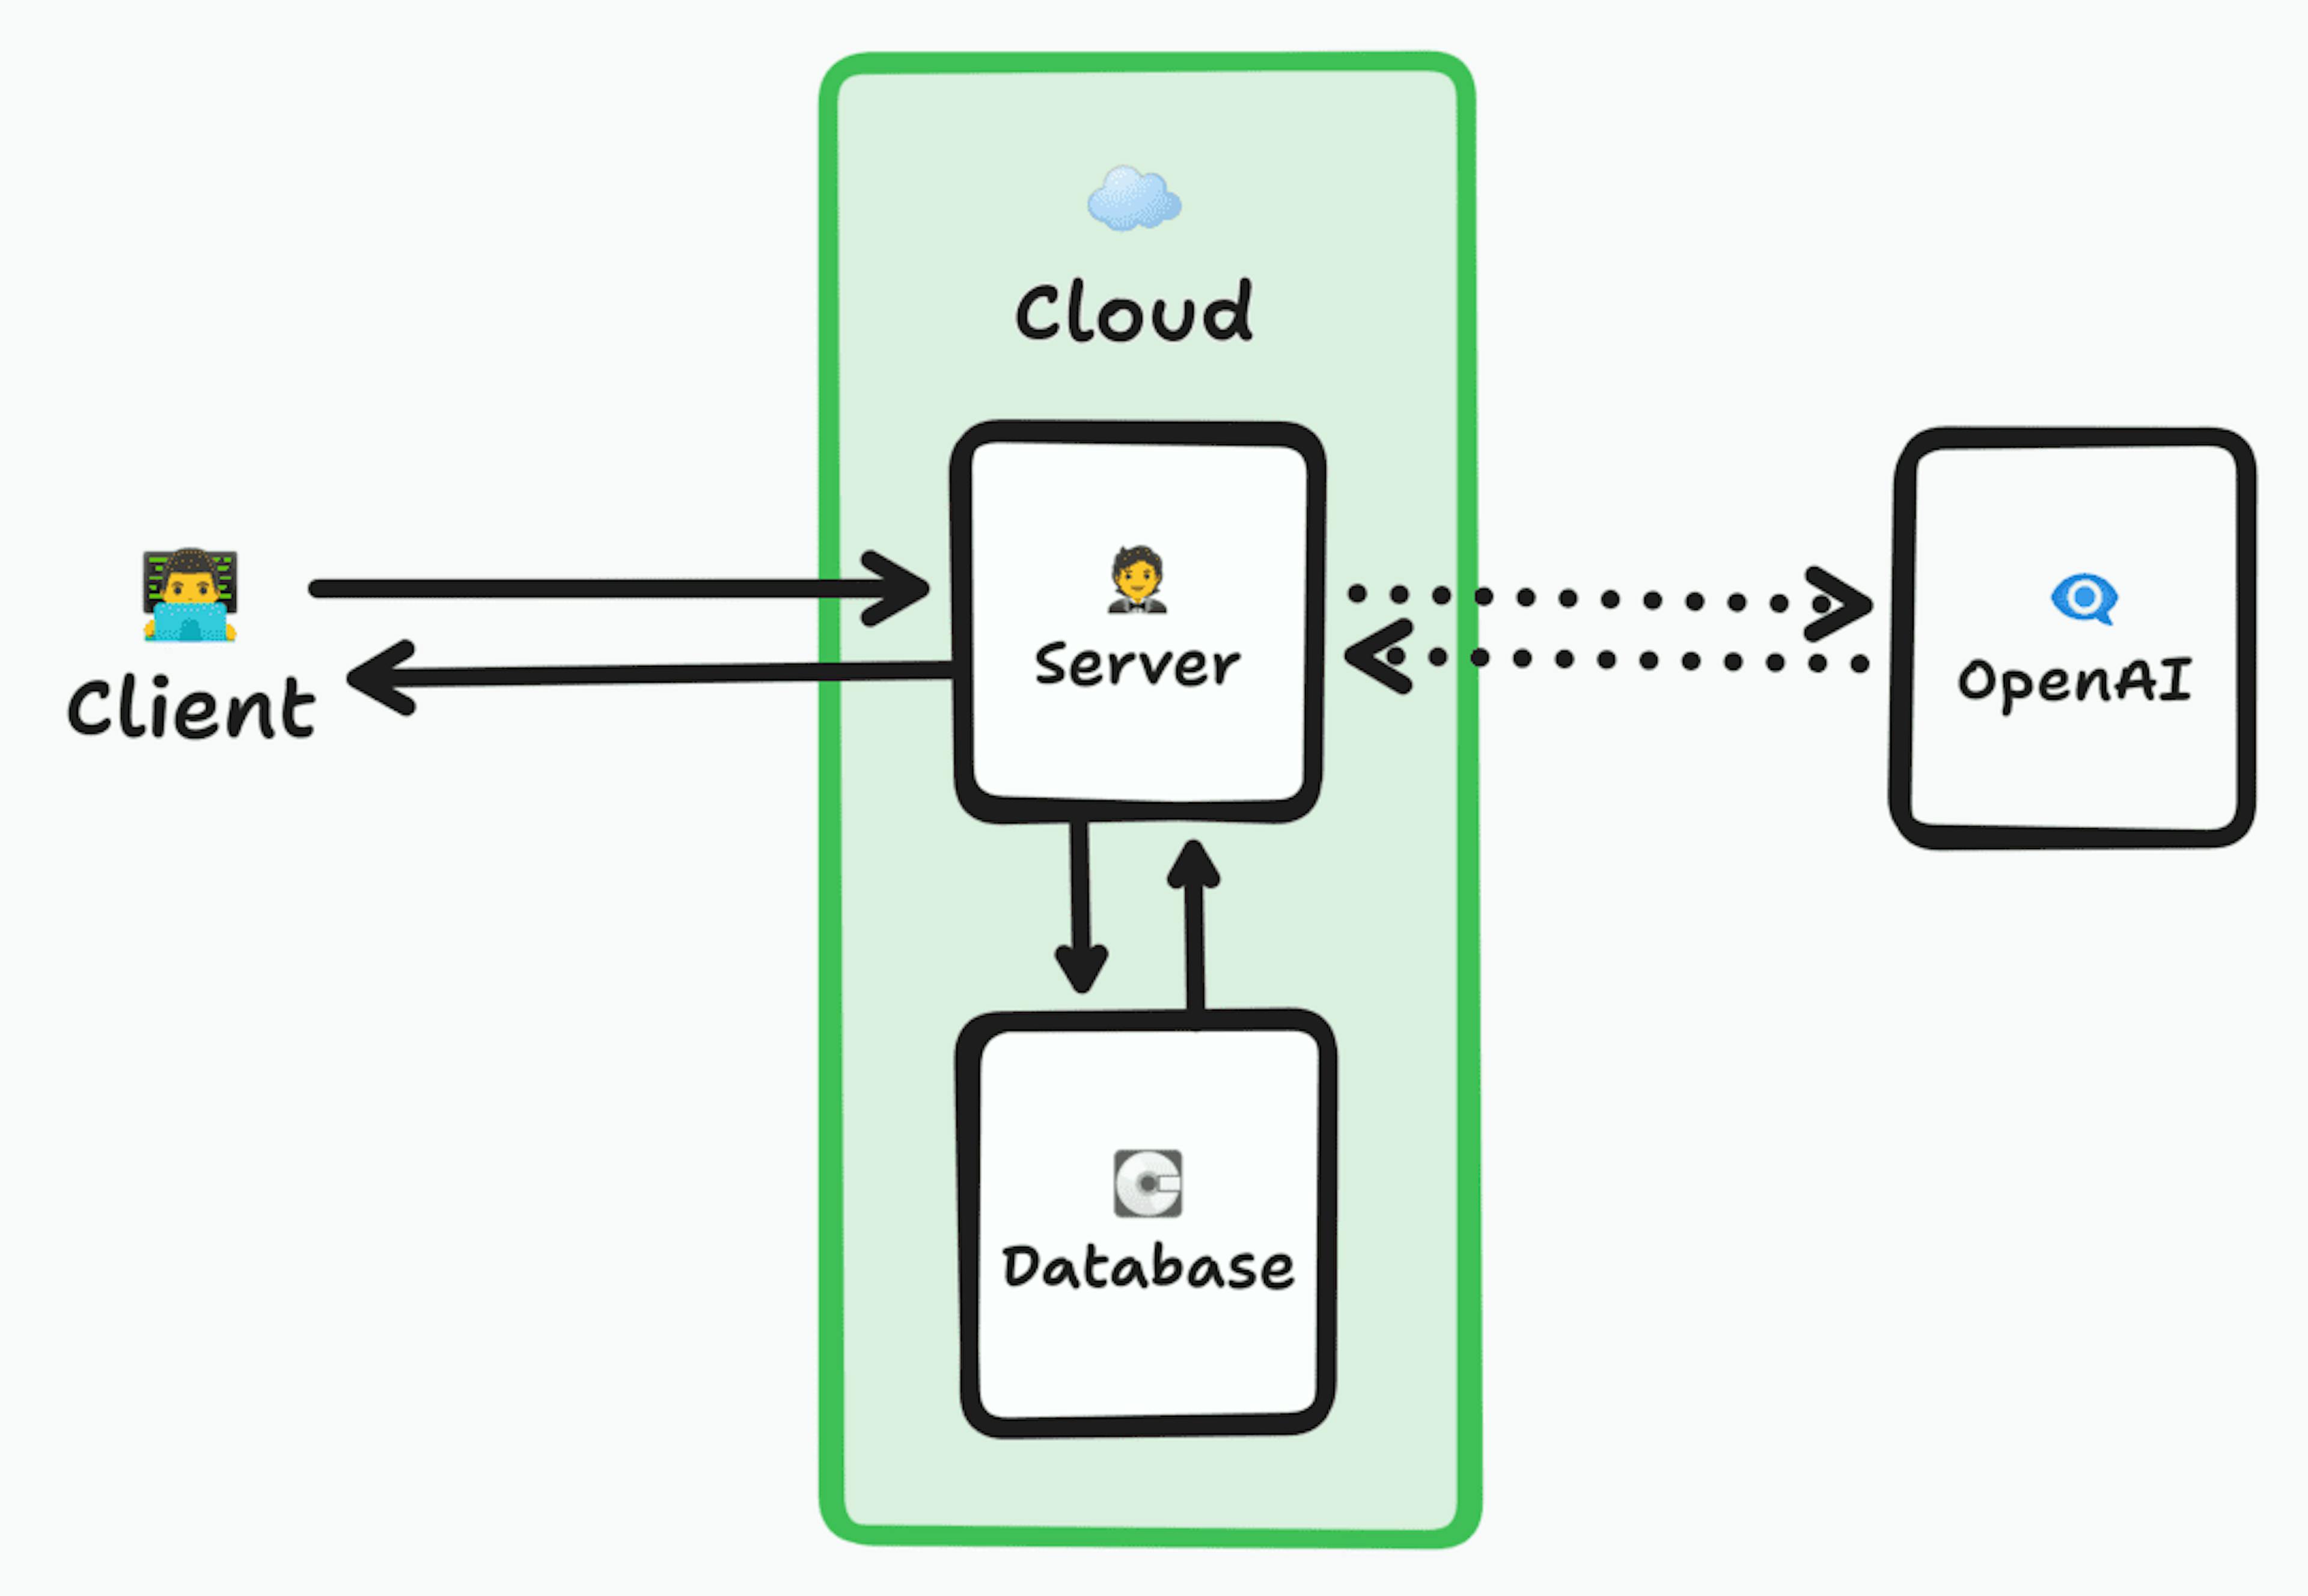 클라우드 내부 서버에 연결하는 클라이언트를 보여주는 아키텍처 다이어그램은 데이터베이스의 데이터를 확인한 다음 선택적으로 OpenAI에 요청을 전달하여 결과를 얻은 다음 데이터를 다시 클라이언트에 반환합니다.